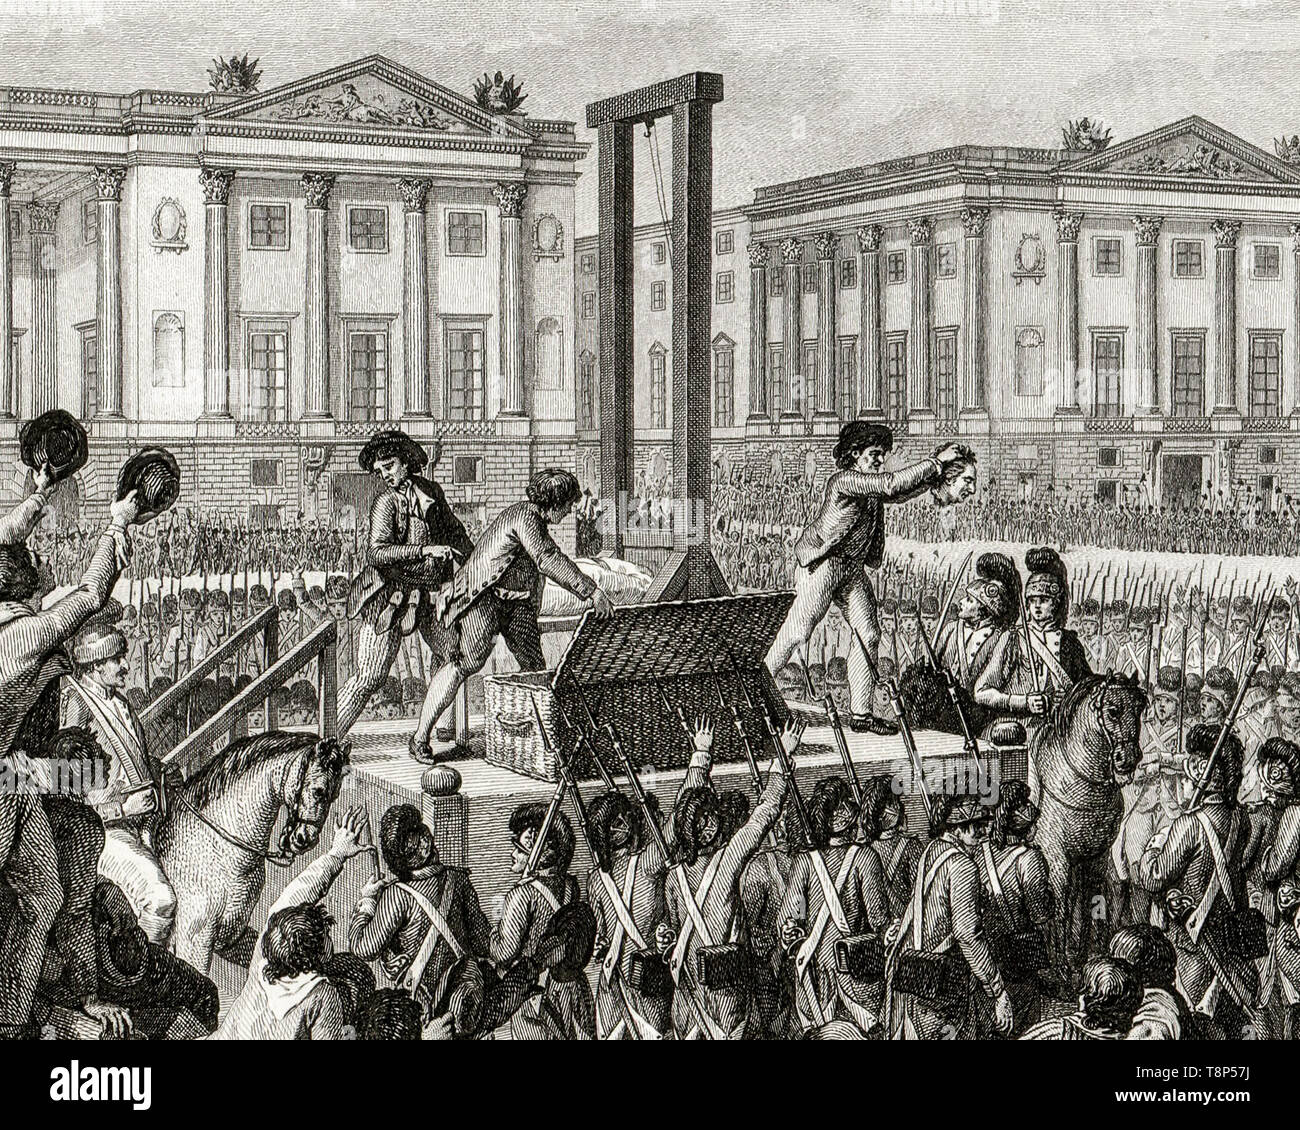 Rivoluzione francese. Esecuzione di Luigi XVI. 21st gennaio 1793 la morte di Luigi Capet (Luigi XVI) in Place de la Revolution, Parigi, incisione 1794 Foto Stock